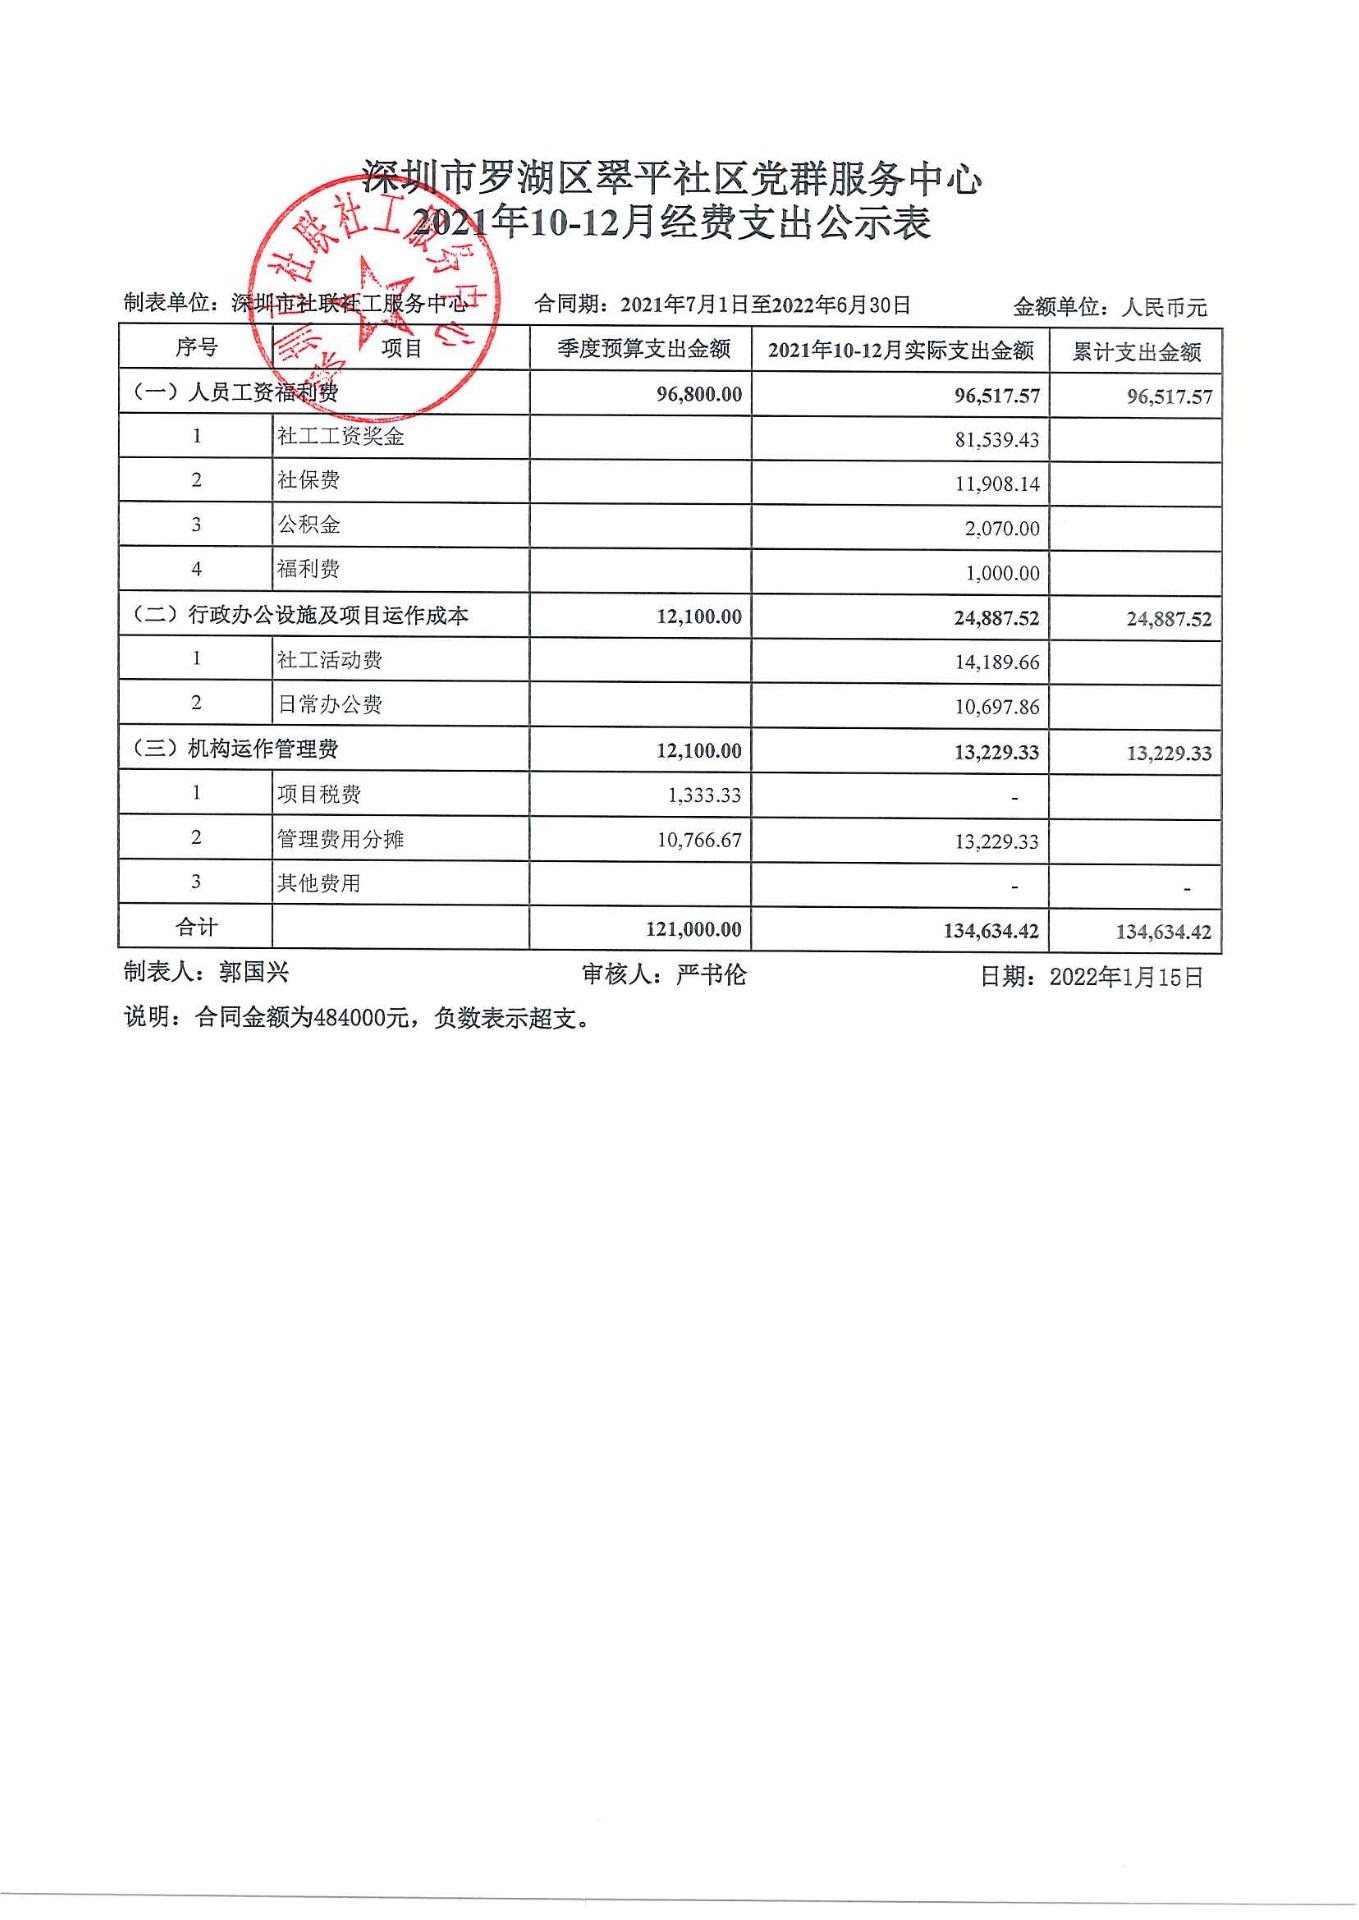 翠平社区2021年10-12月 财务公示表